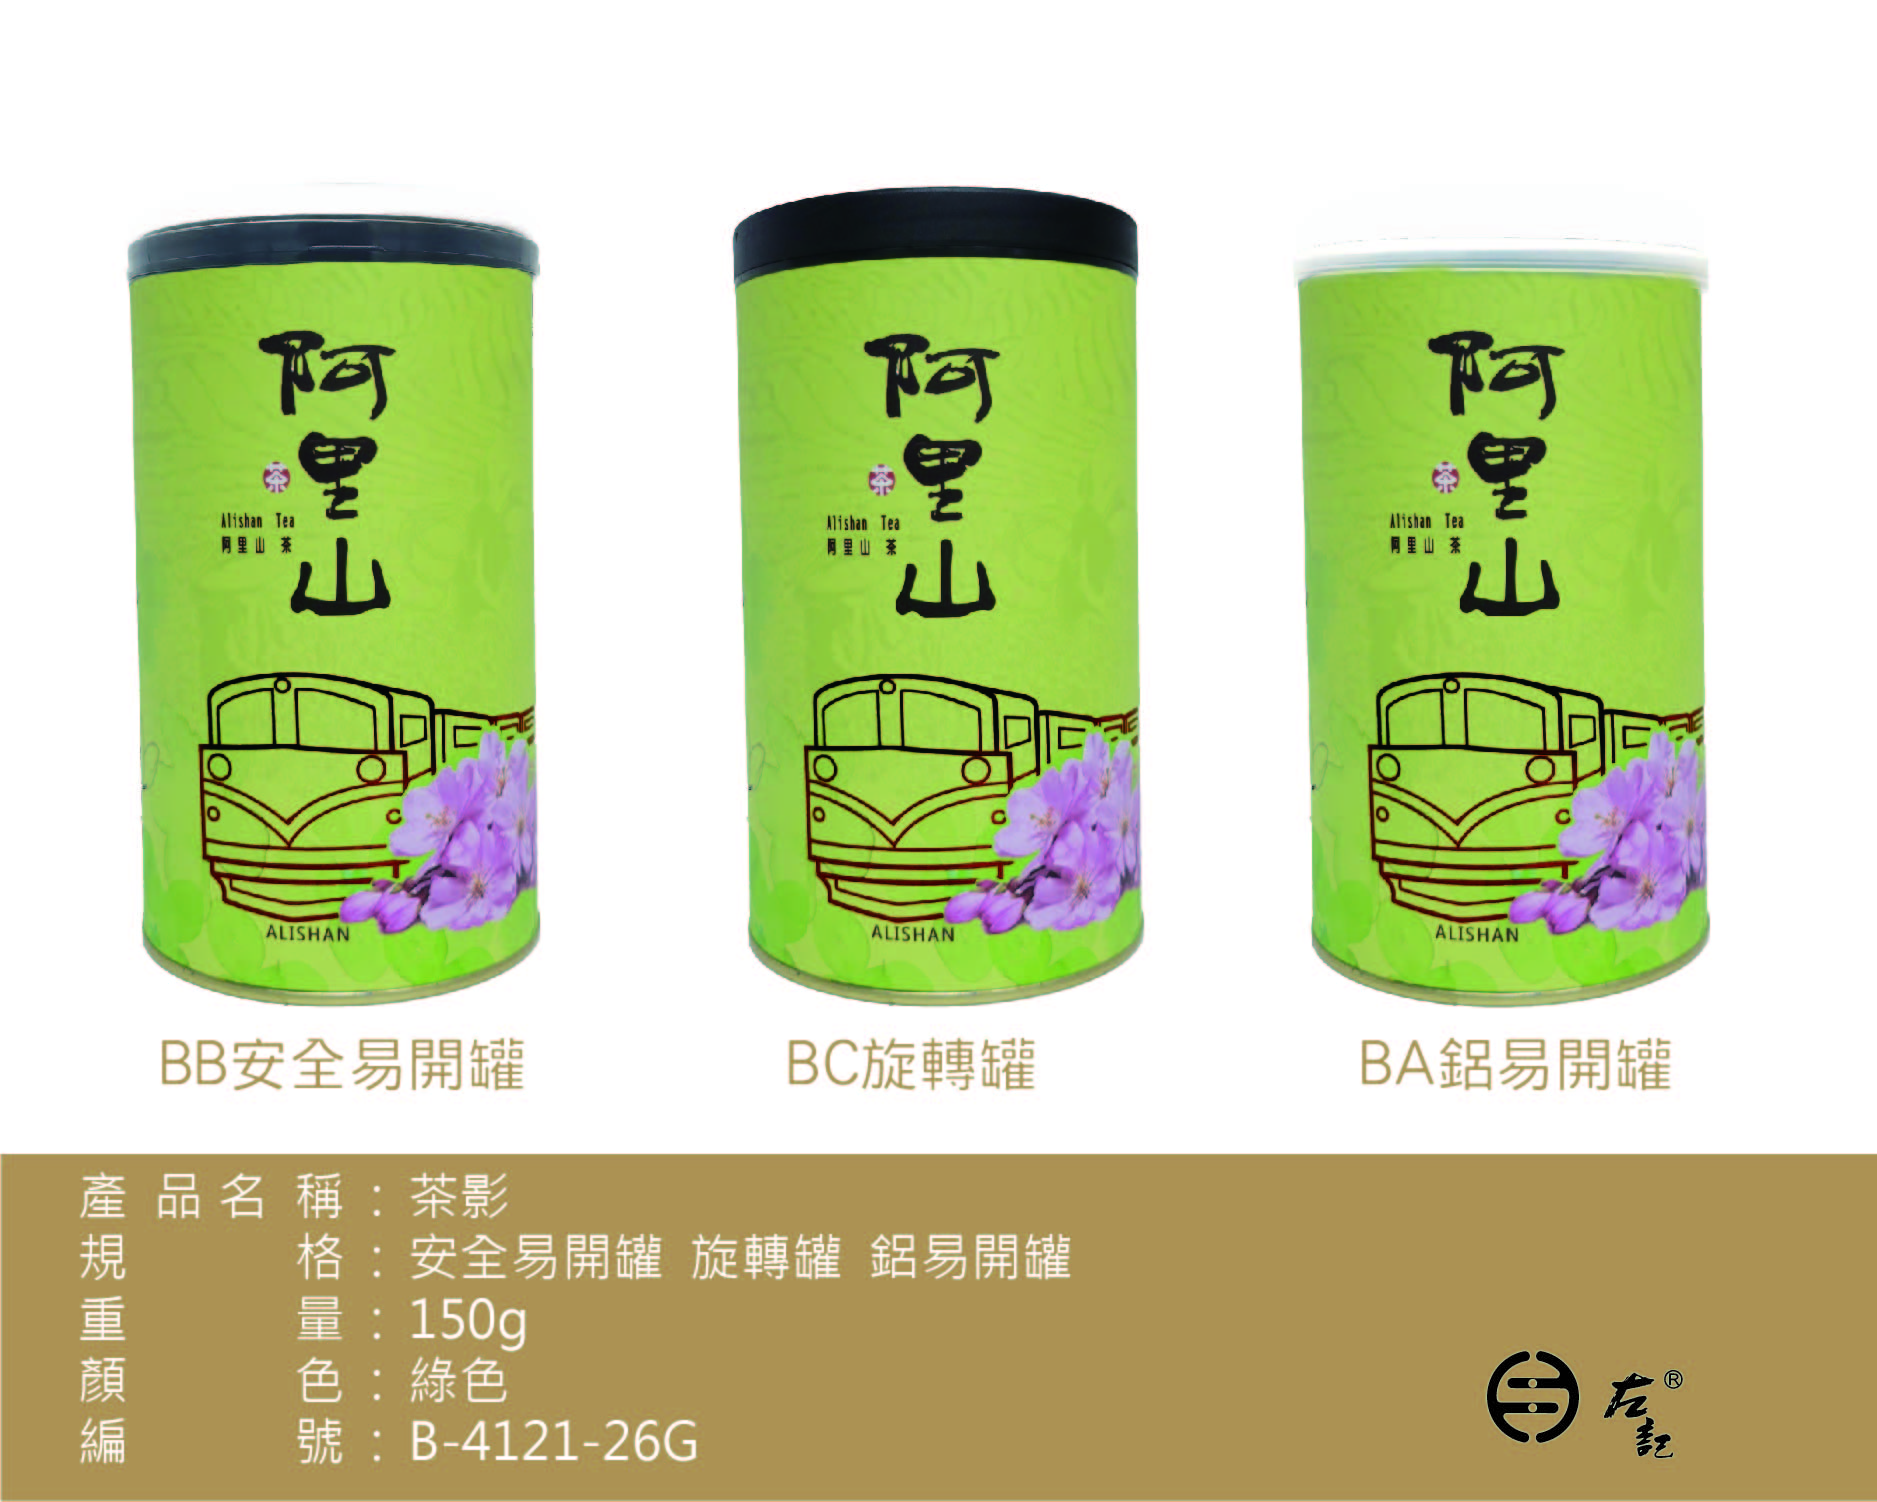 B-4121茶影-150g紙罐-阿里山茶(綠)